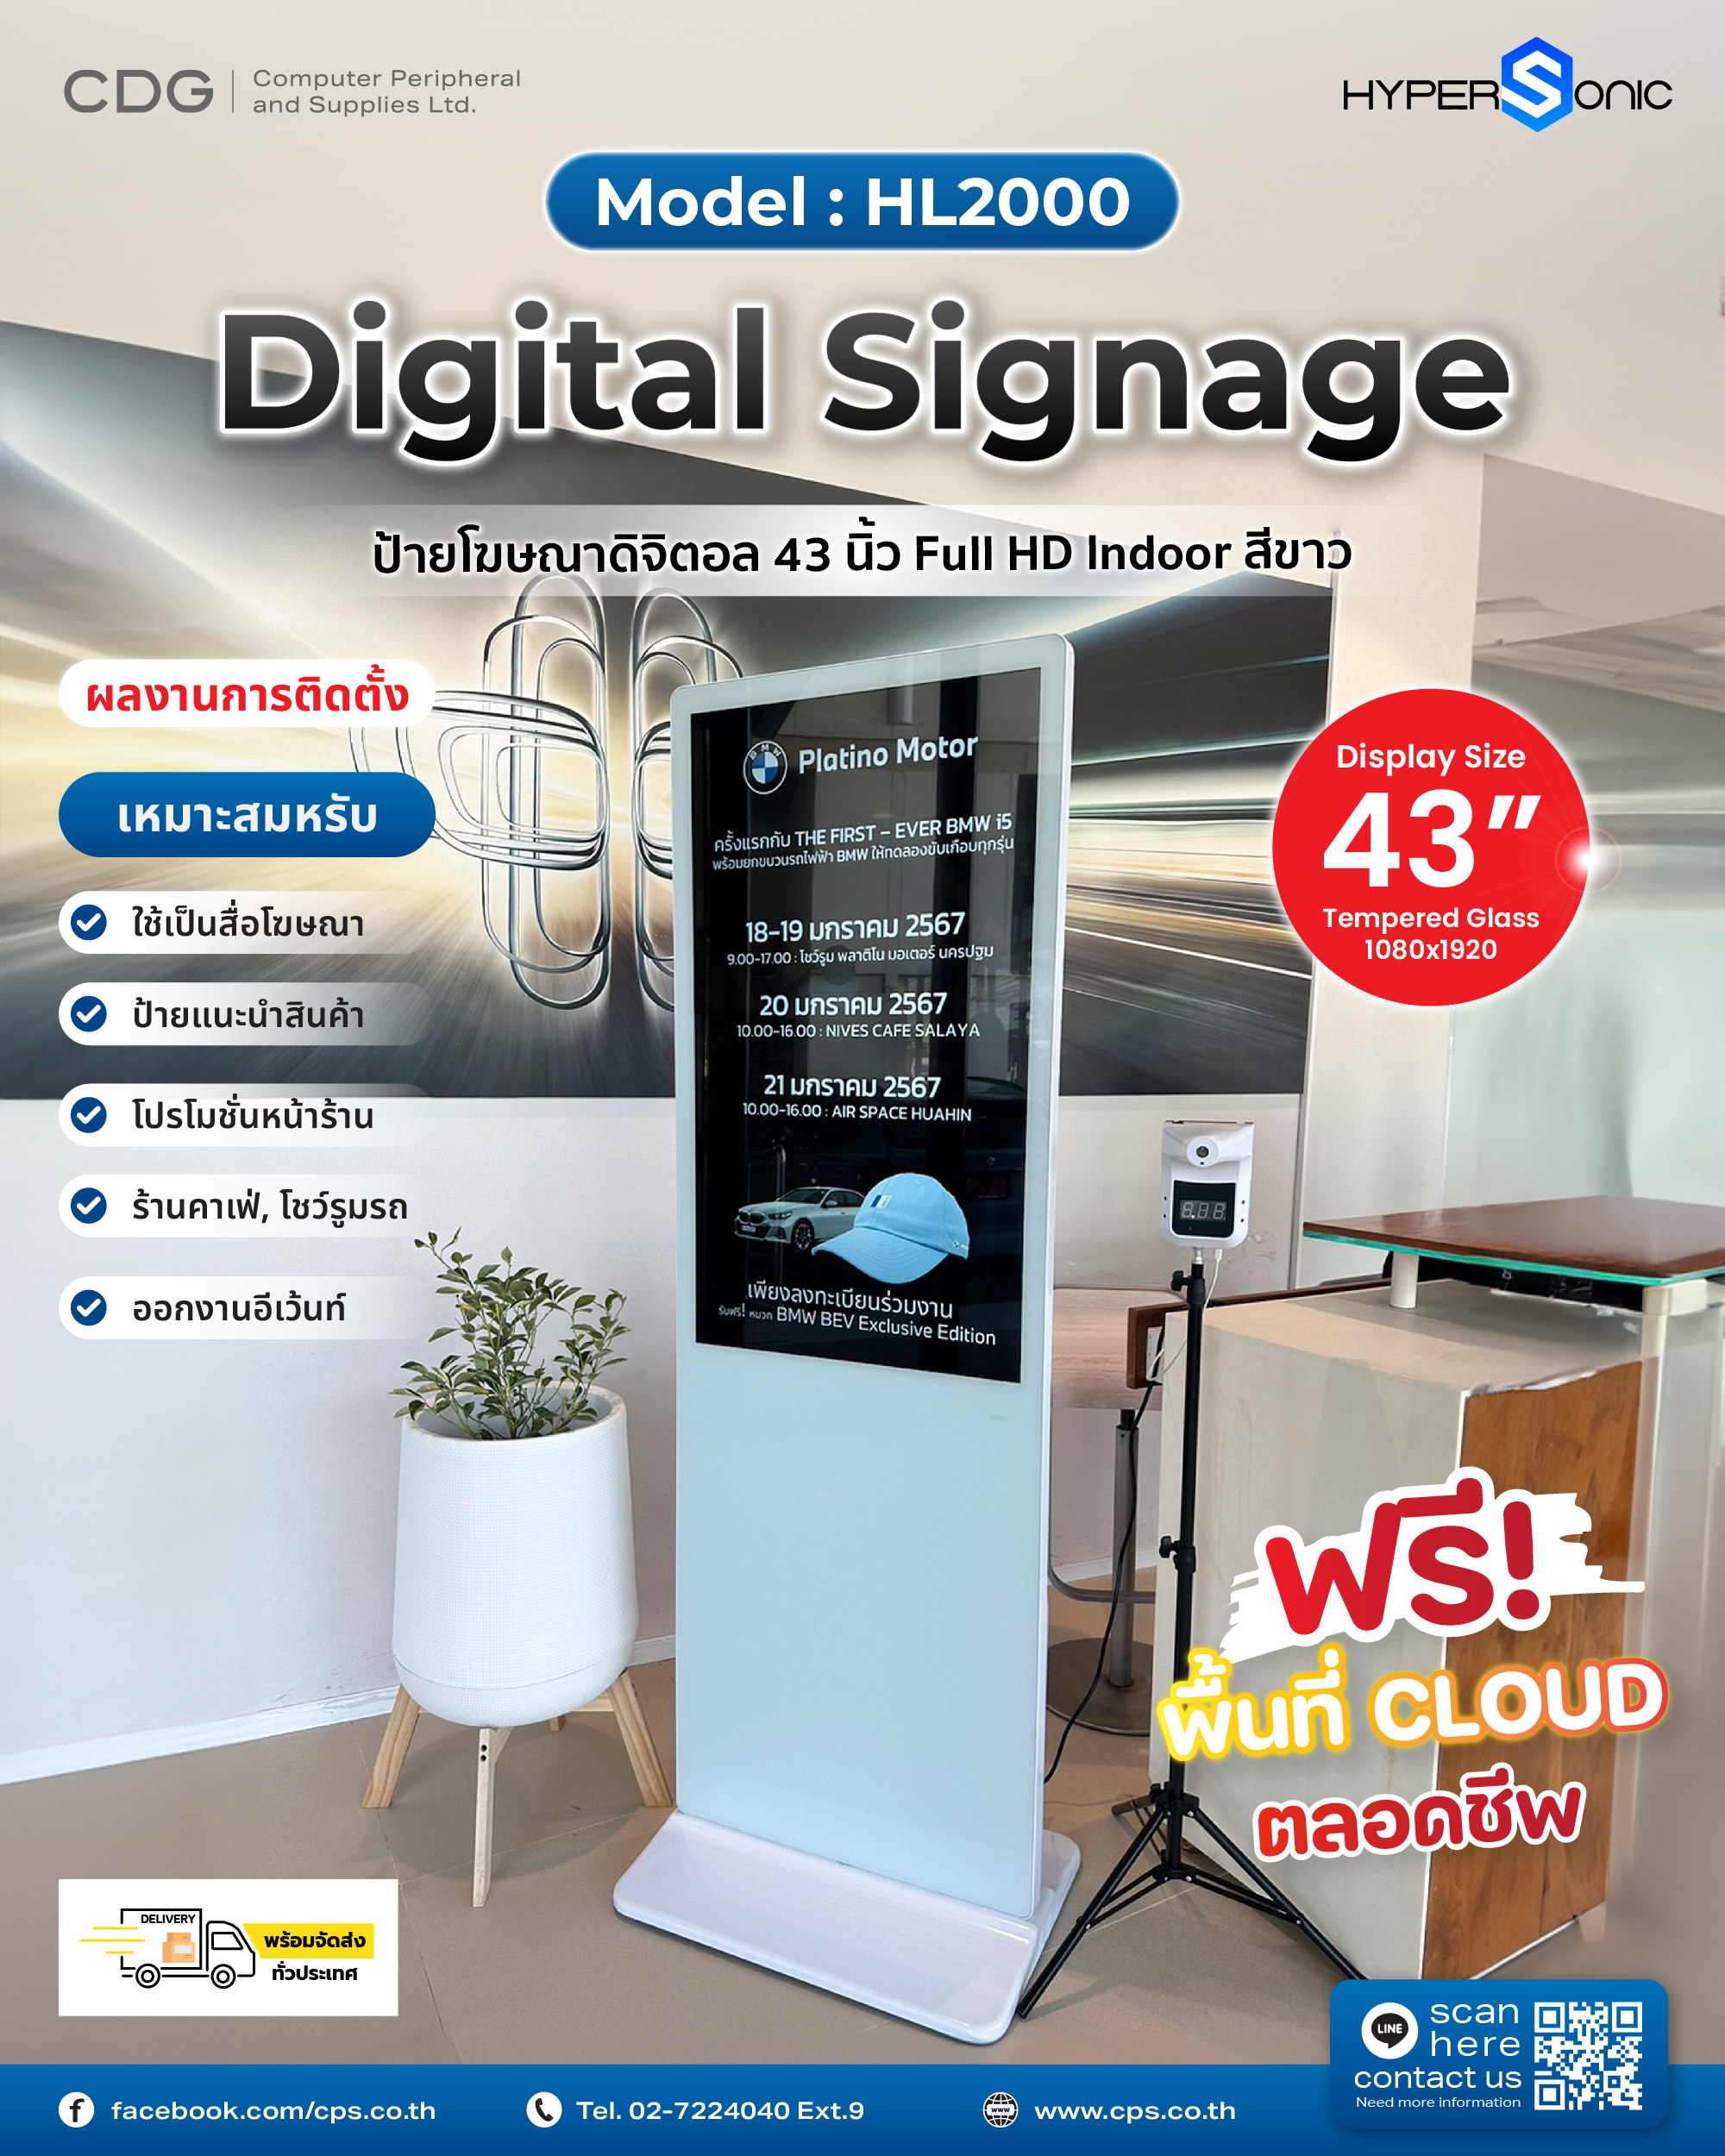 Digital Signage Model HL2000 Series (Portable)